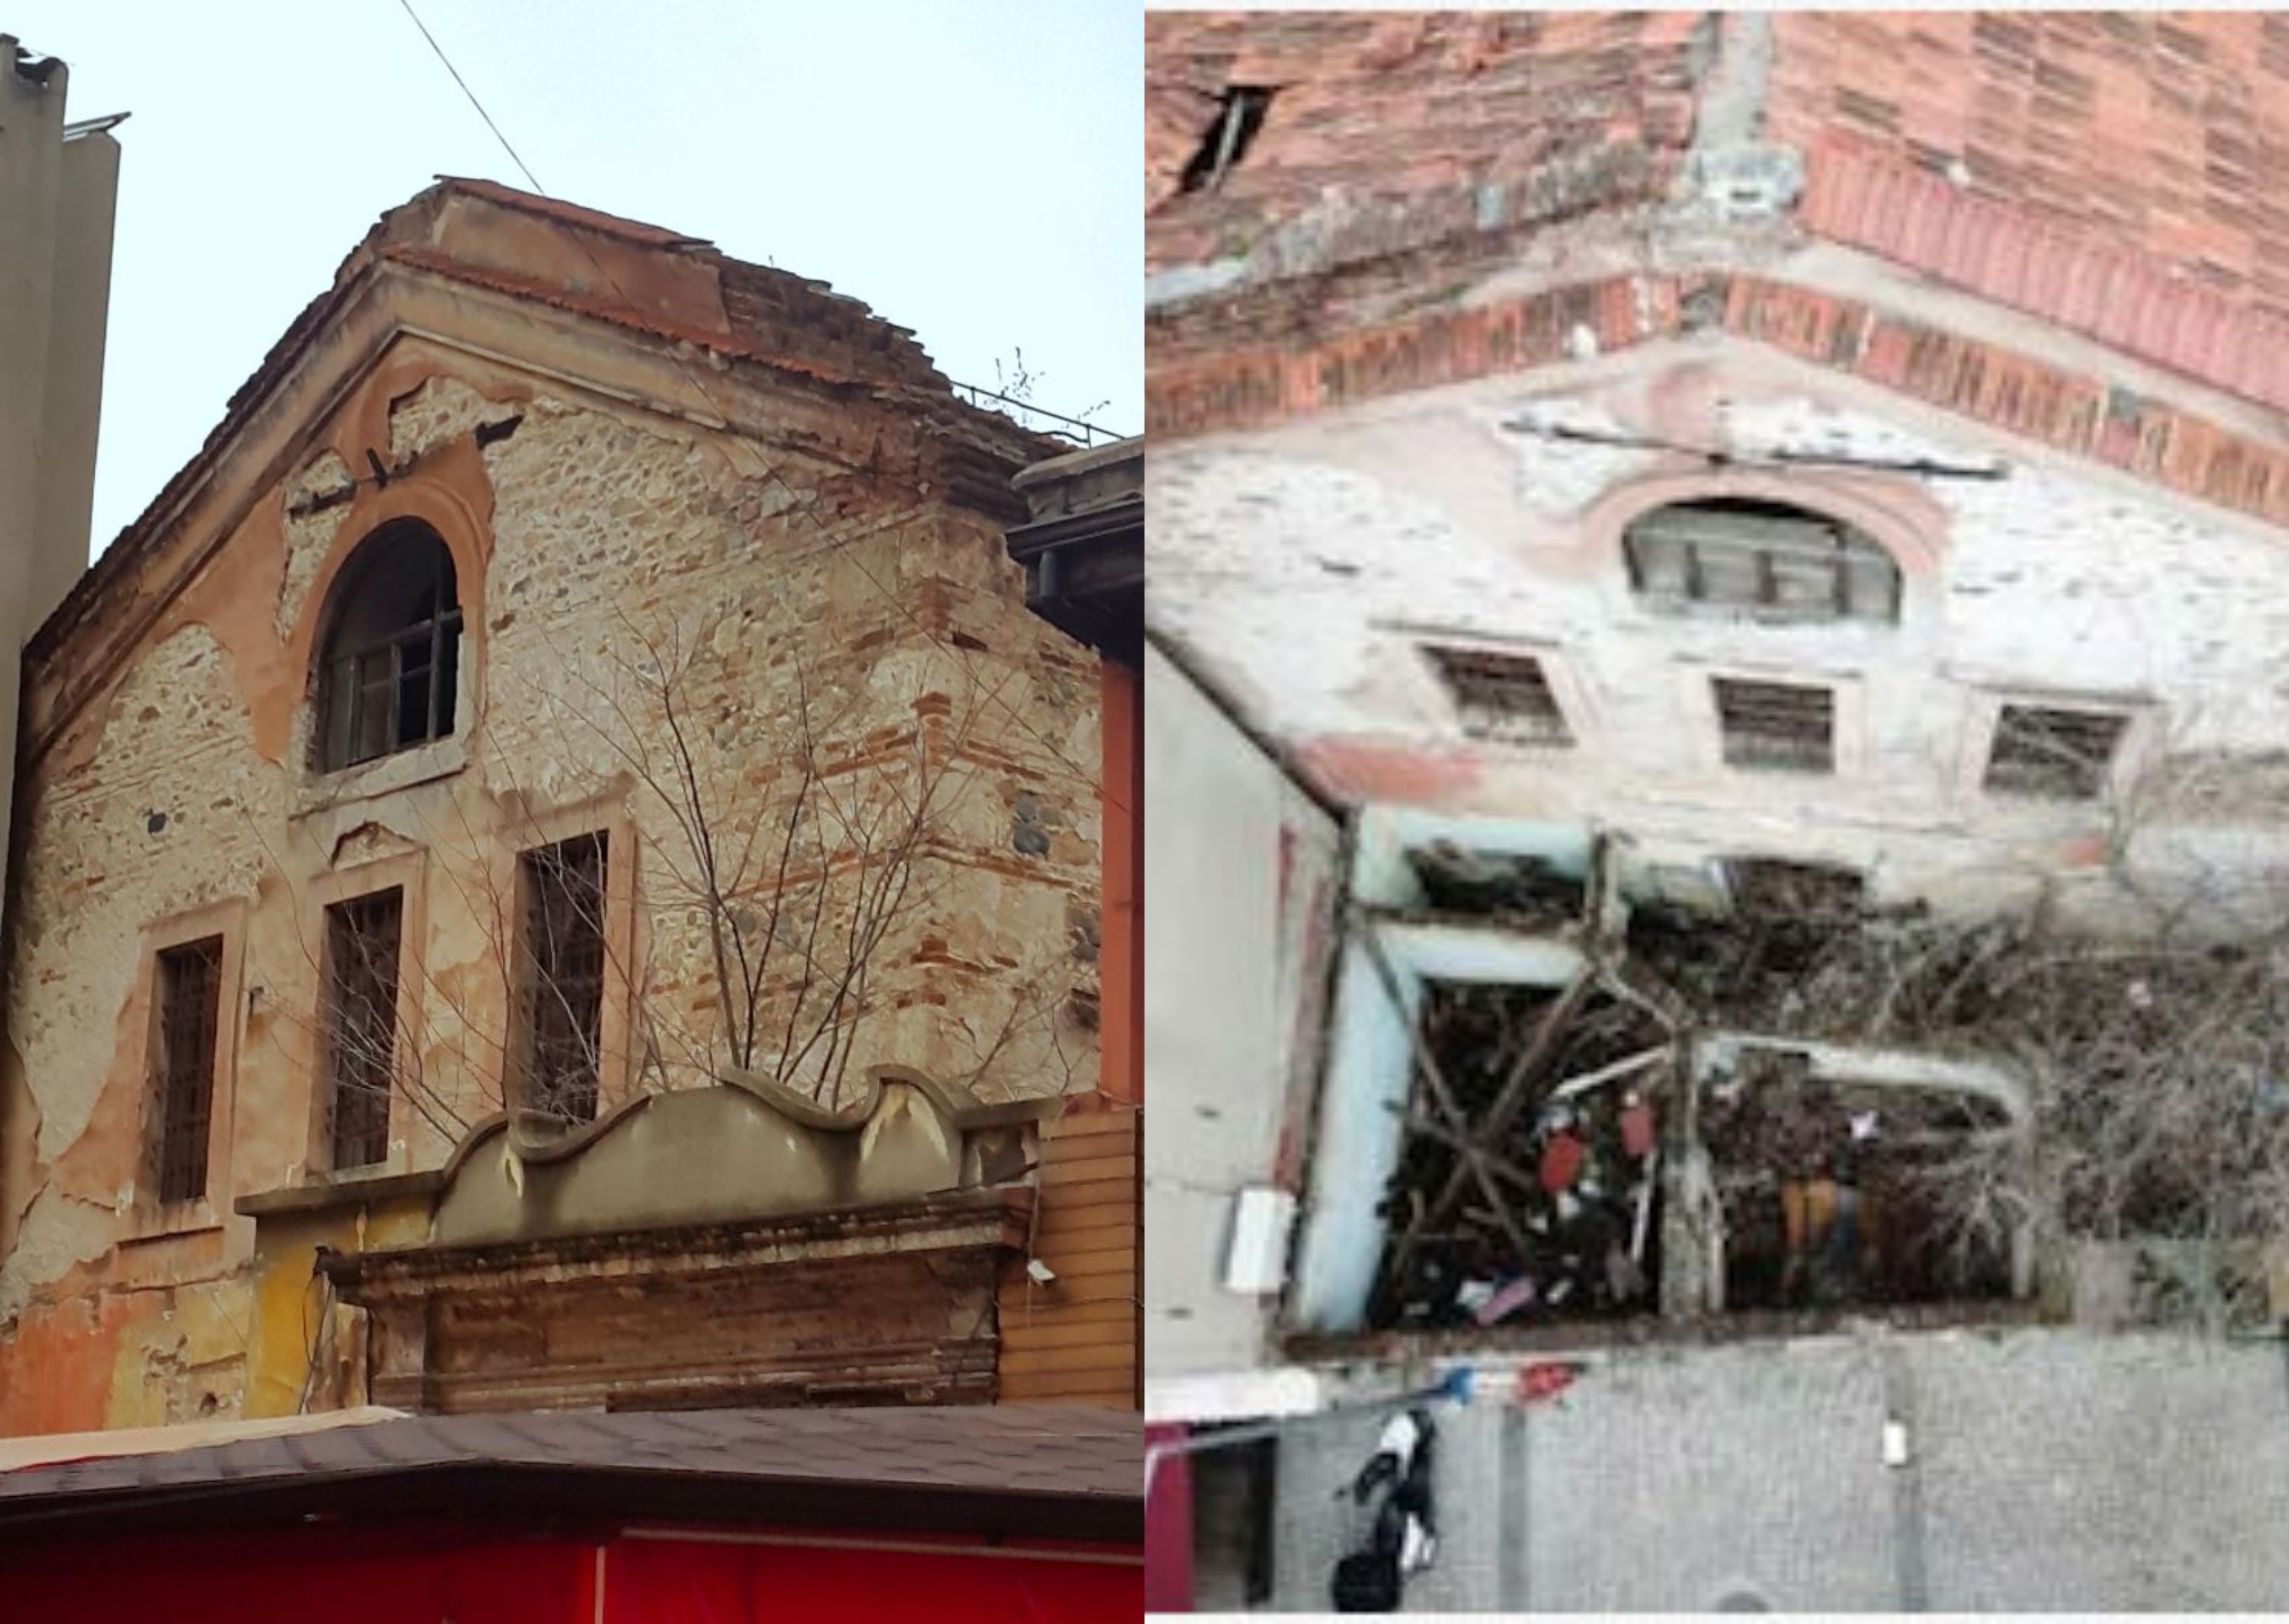 Թուրքիայում վաճառքի հանված Բուրսայի հայկական եկեղեցին անմխիթար վիճակում է և հրատապ վերականգնման կարիք ունի. Ահազանգում է Թուրքիայում թողարկվող պարբերականը